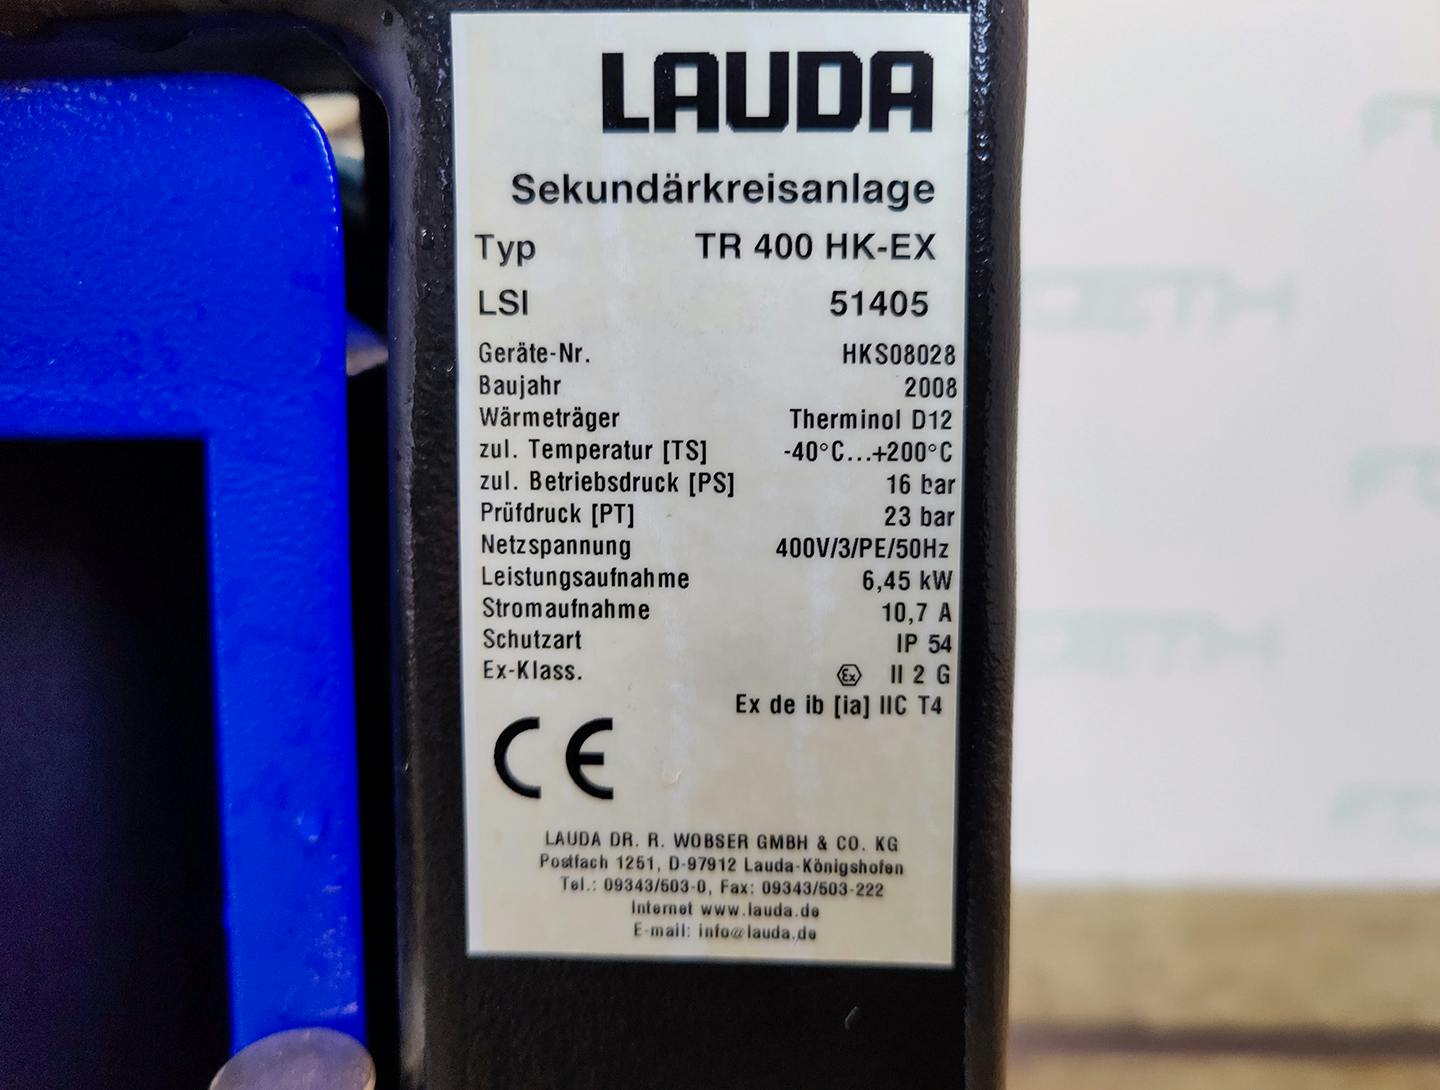 Lauda TR400 HK-EX "secondary circuit system" - Temperature control unit - image 6